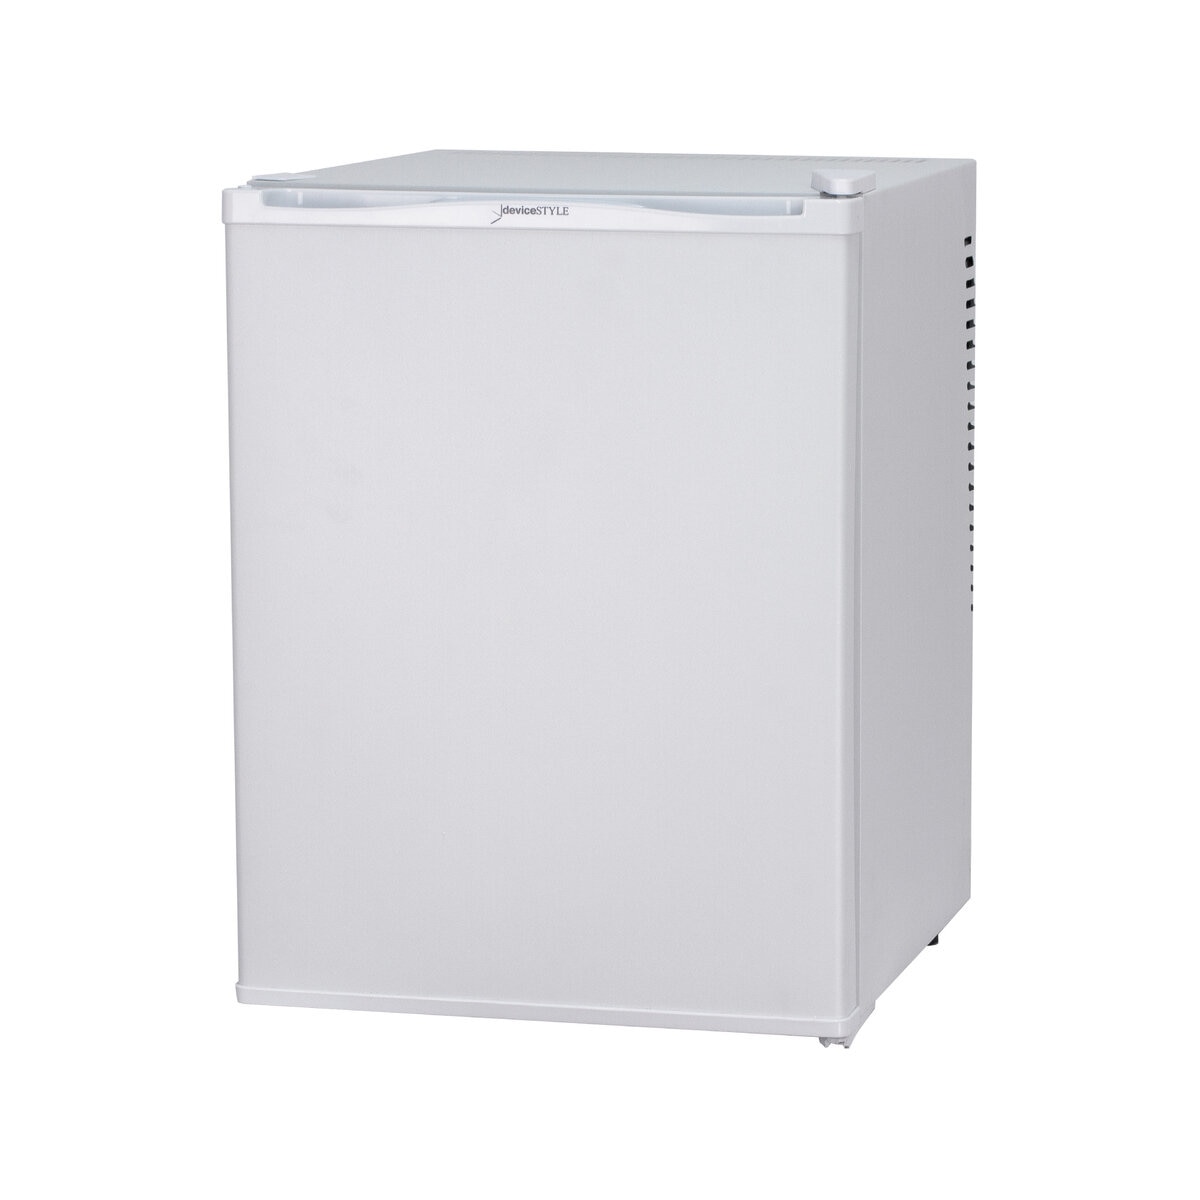 deviceSTYLE 32L ペルチェ式 1ドア冷蔵庫 ホワイト RA-P32-W